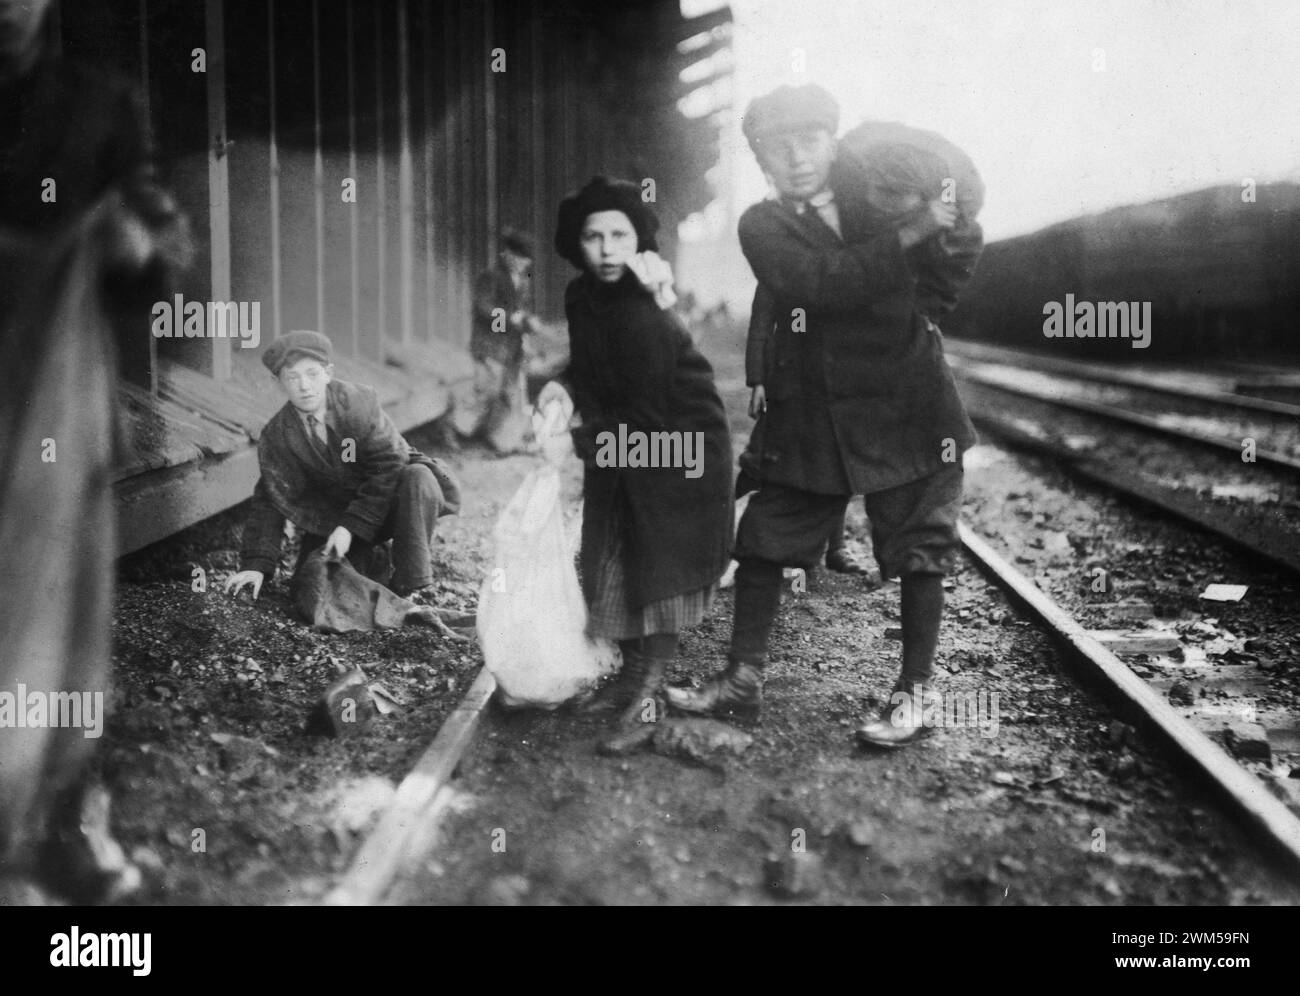 De jeunes enfants volent du charbon dans la gare ferroviaire de charbon - Boston, Massachusetts. Photo de Lewis W. Hine Banque D'Images